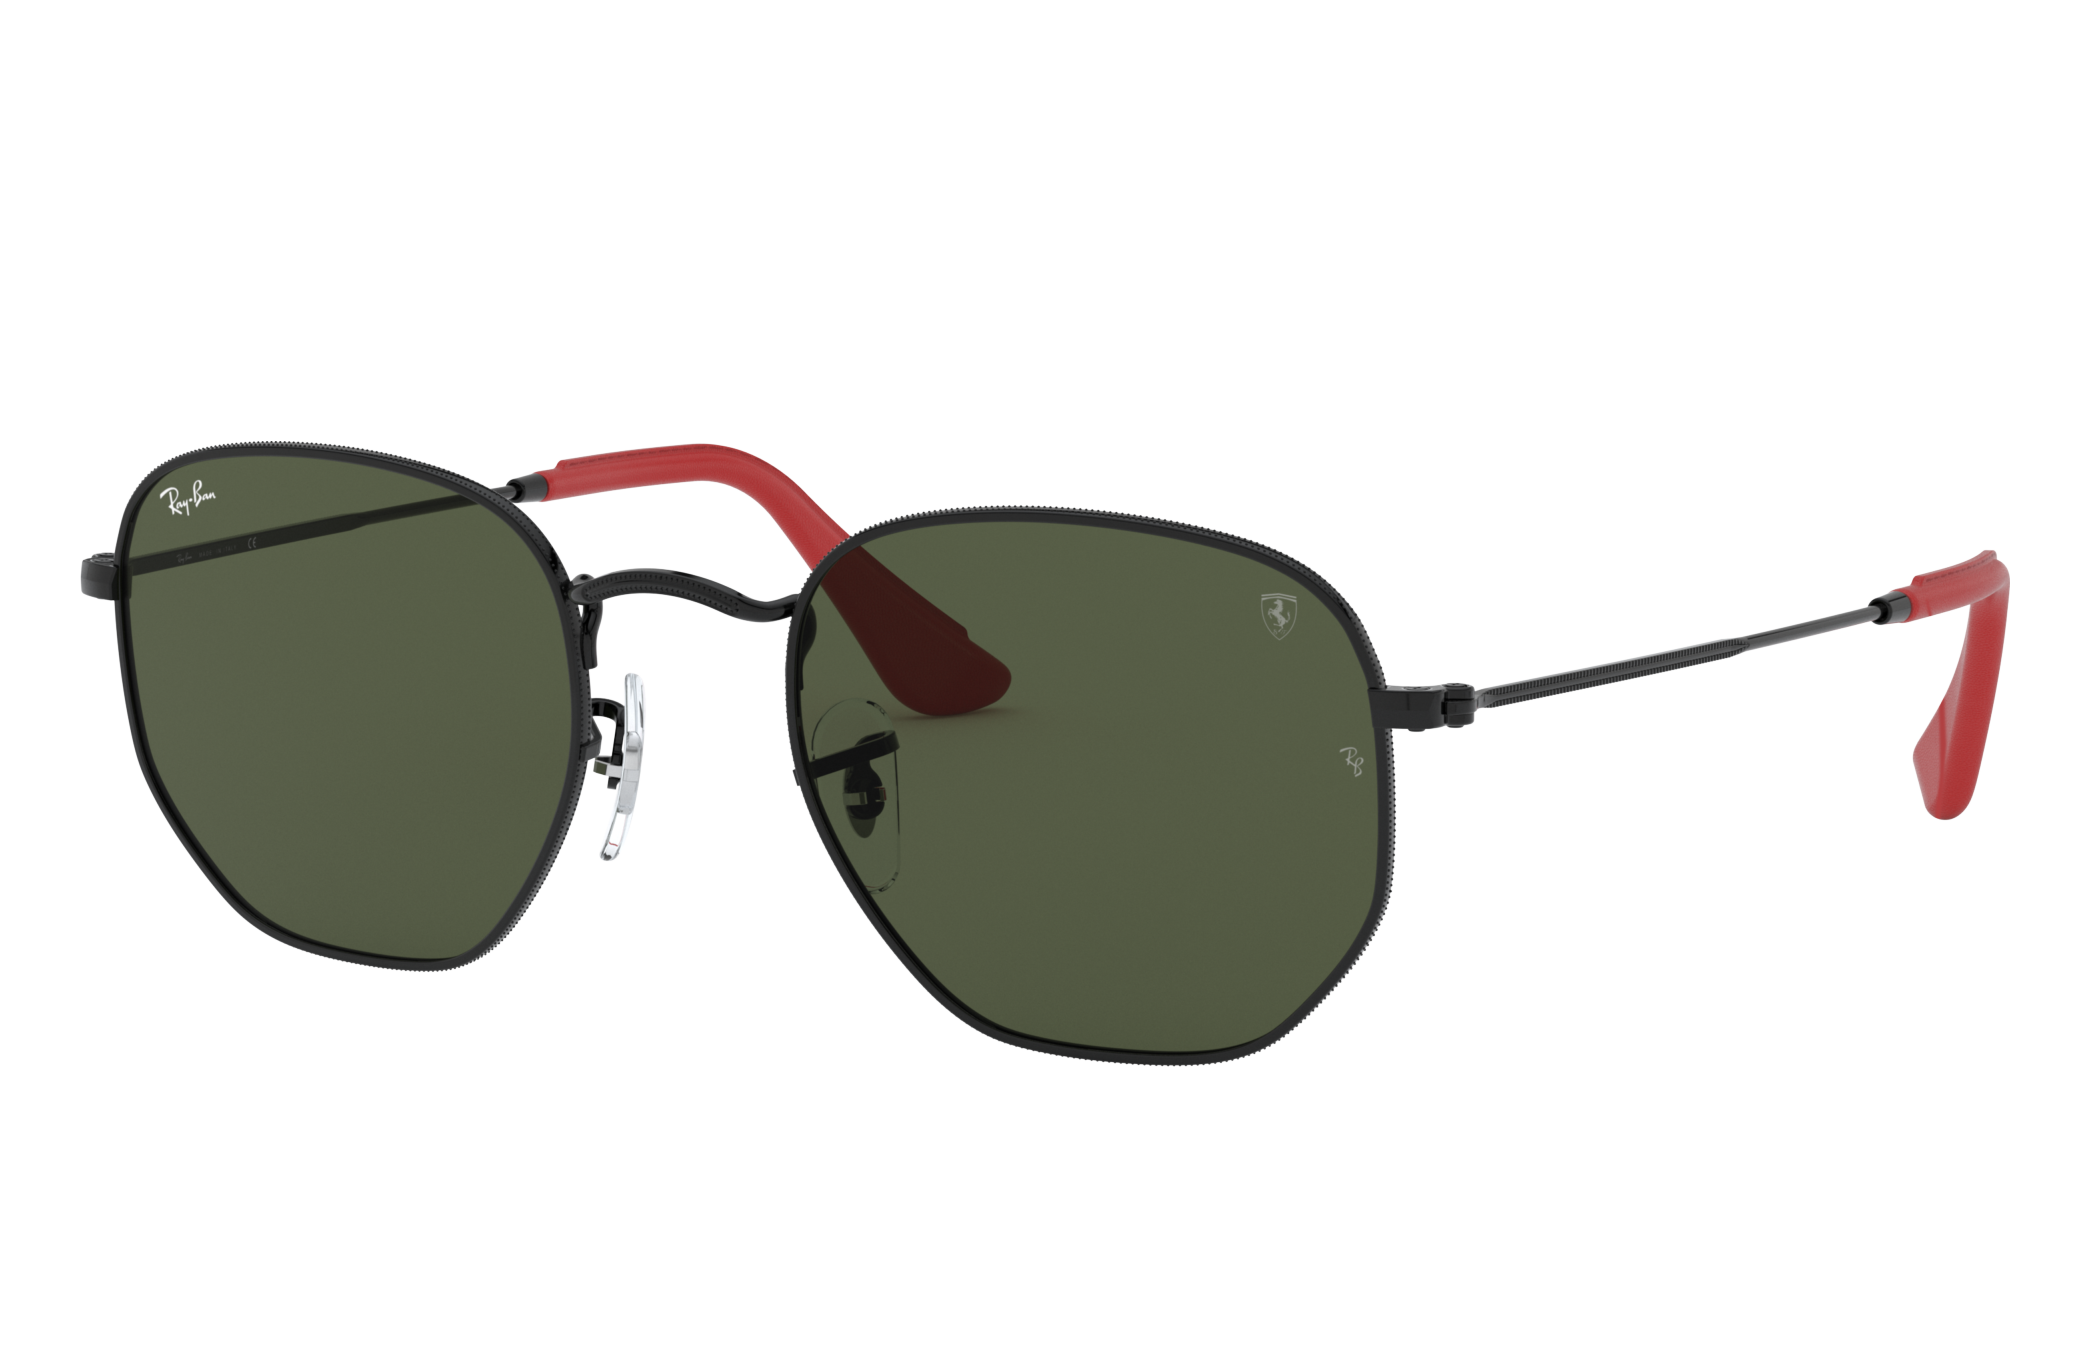 Rb3548nm Scuderia Ferrari Collection Sunglasses in Preto and Verde | Ray-Ban ®